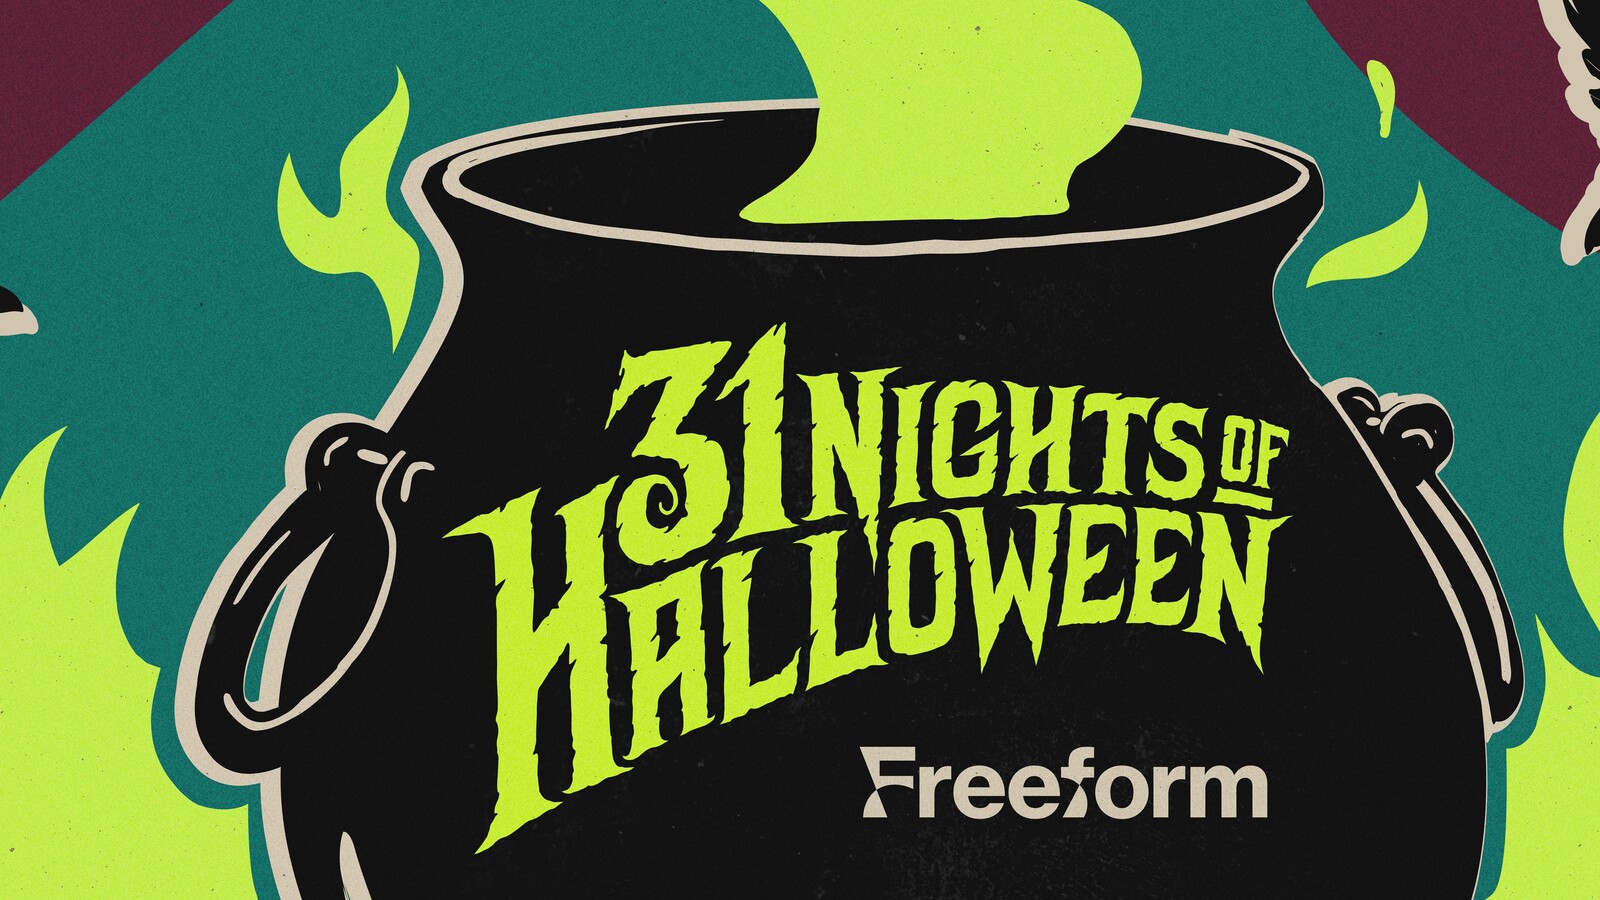 The 31 Nights of Halloween Schedule